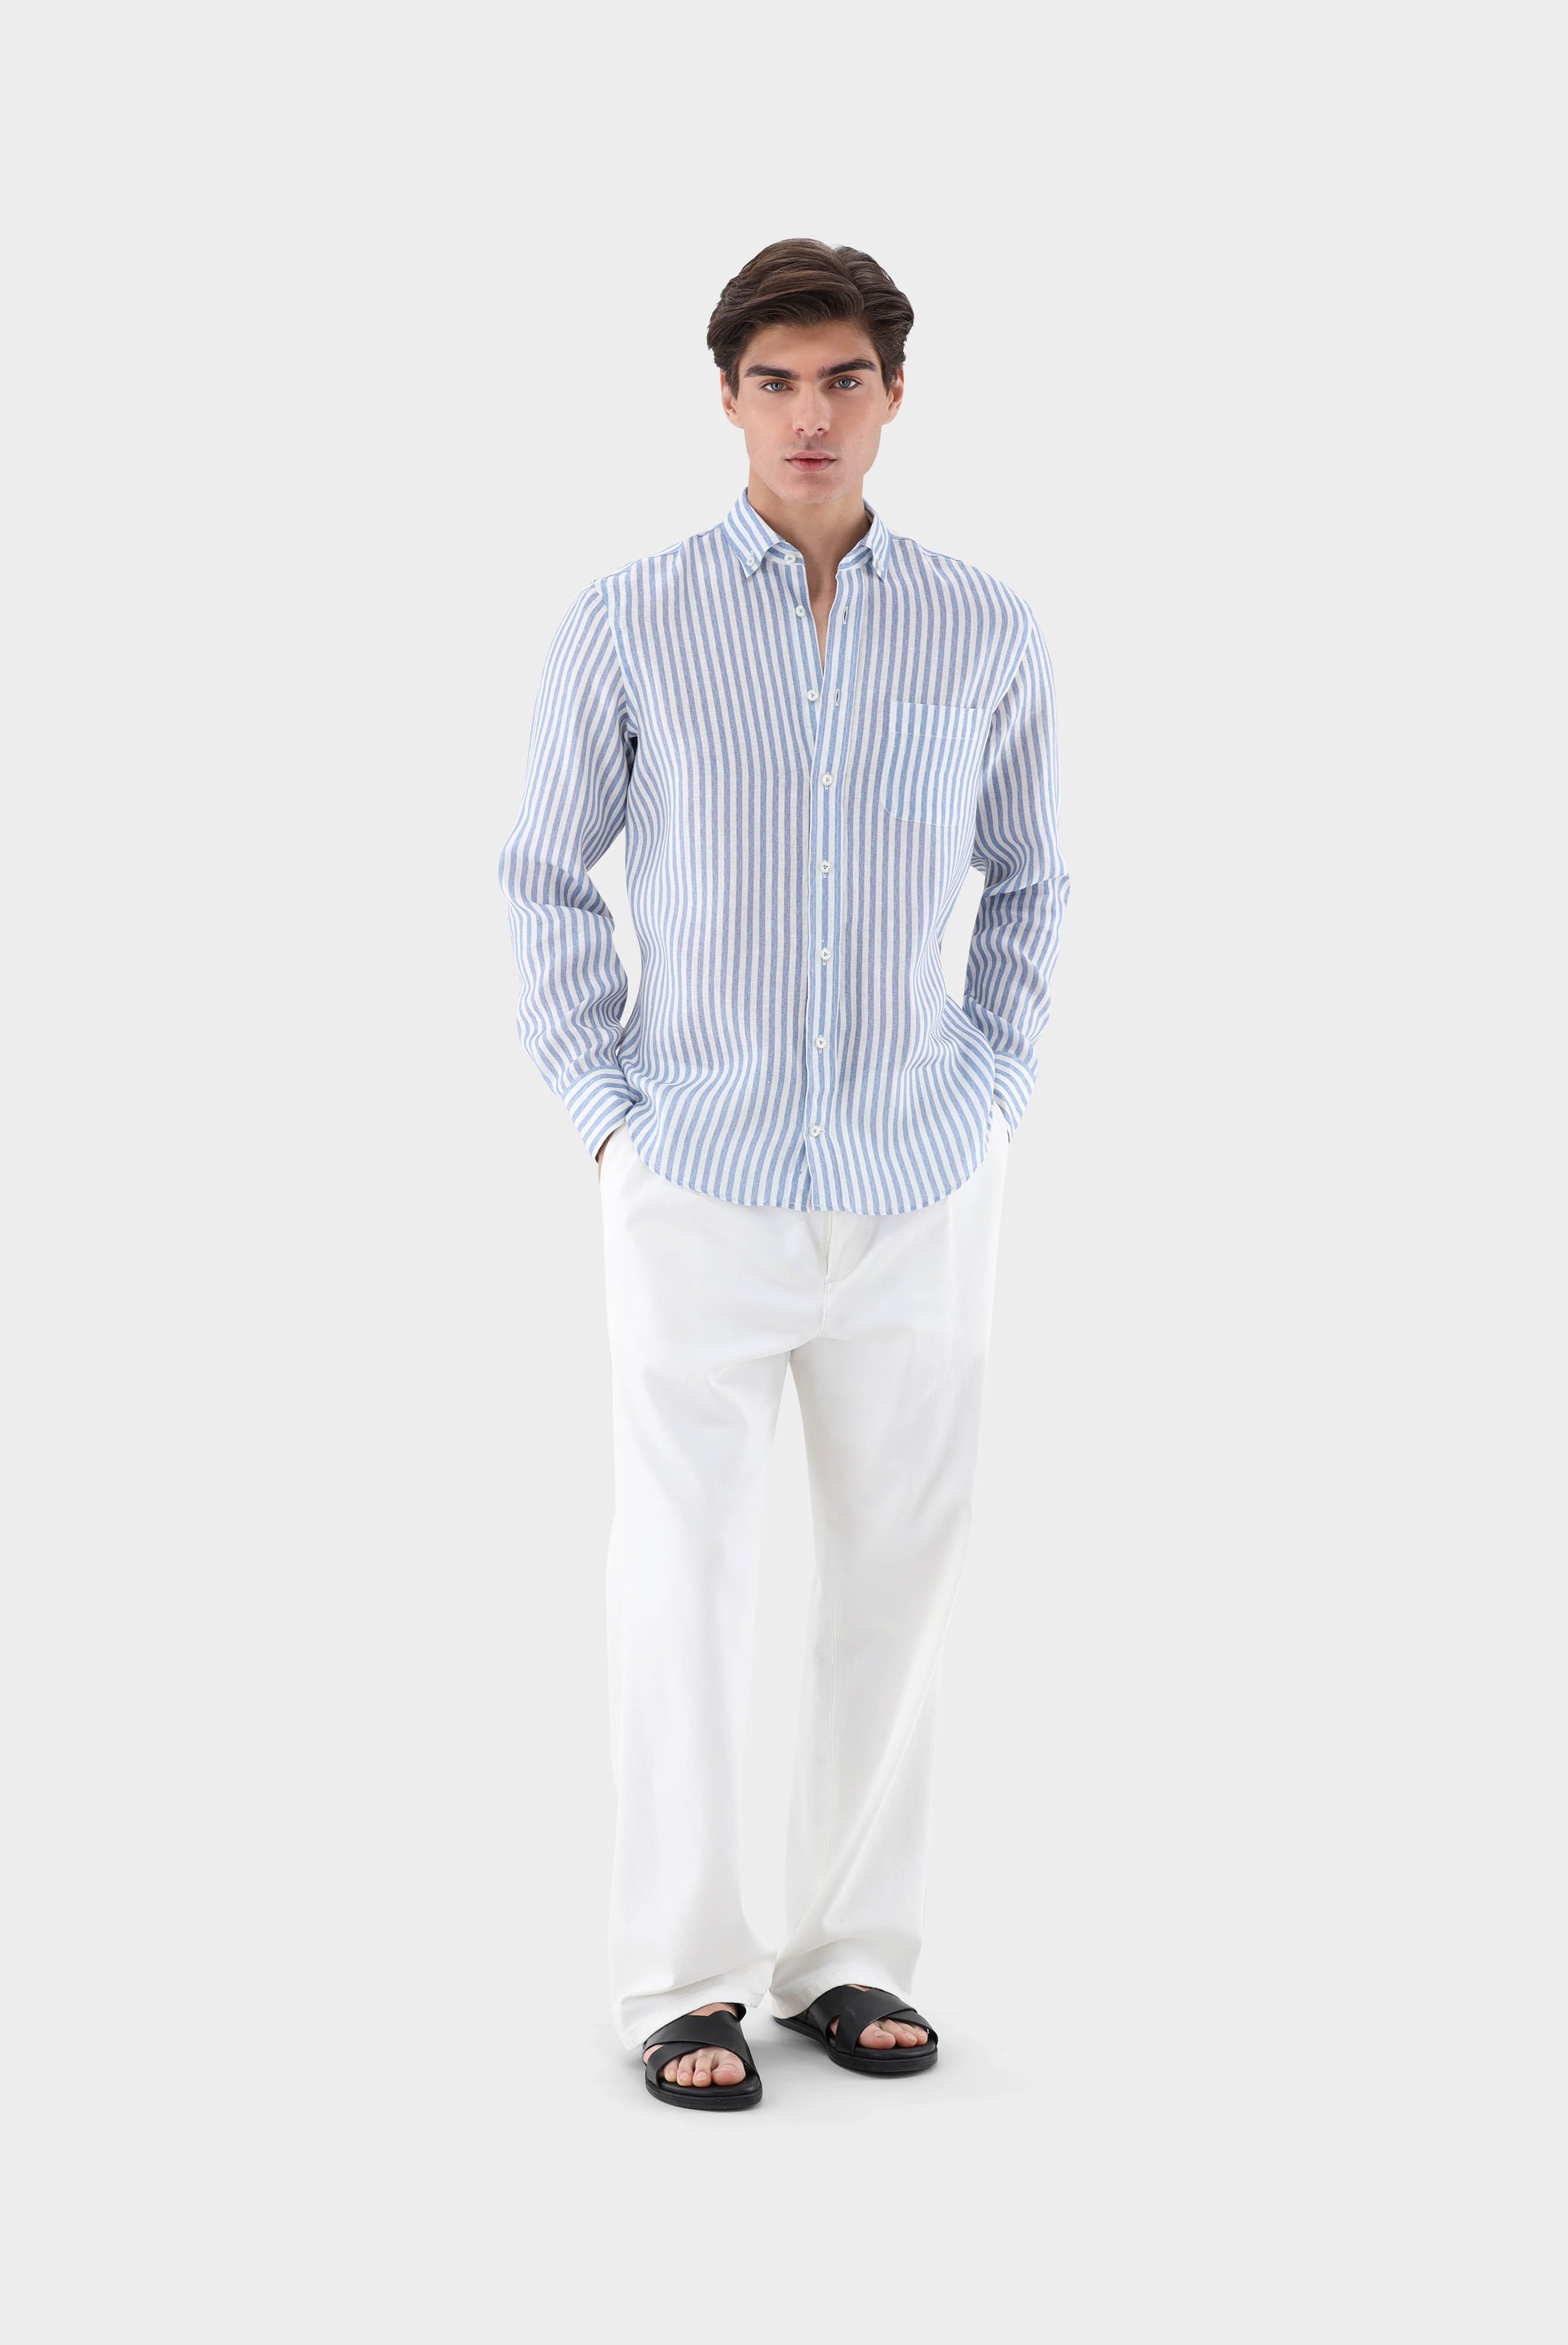 Casual Hemden+Leinenhemd mit Streifen-Druck Tailor Fit+20.2013.9V.170352.740.39